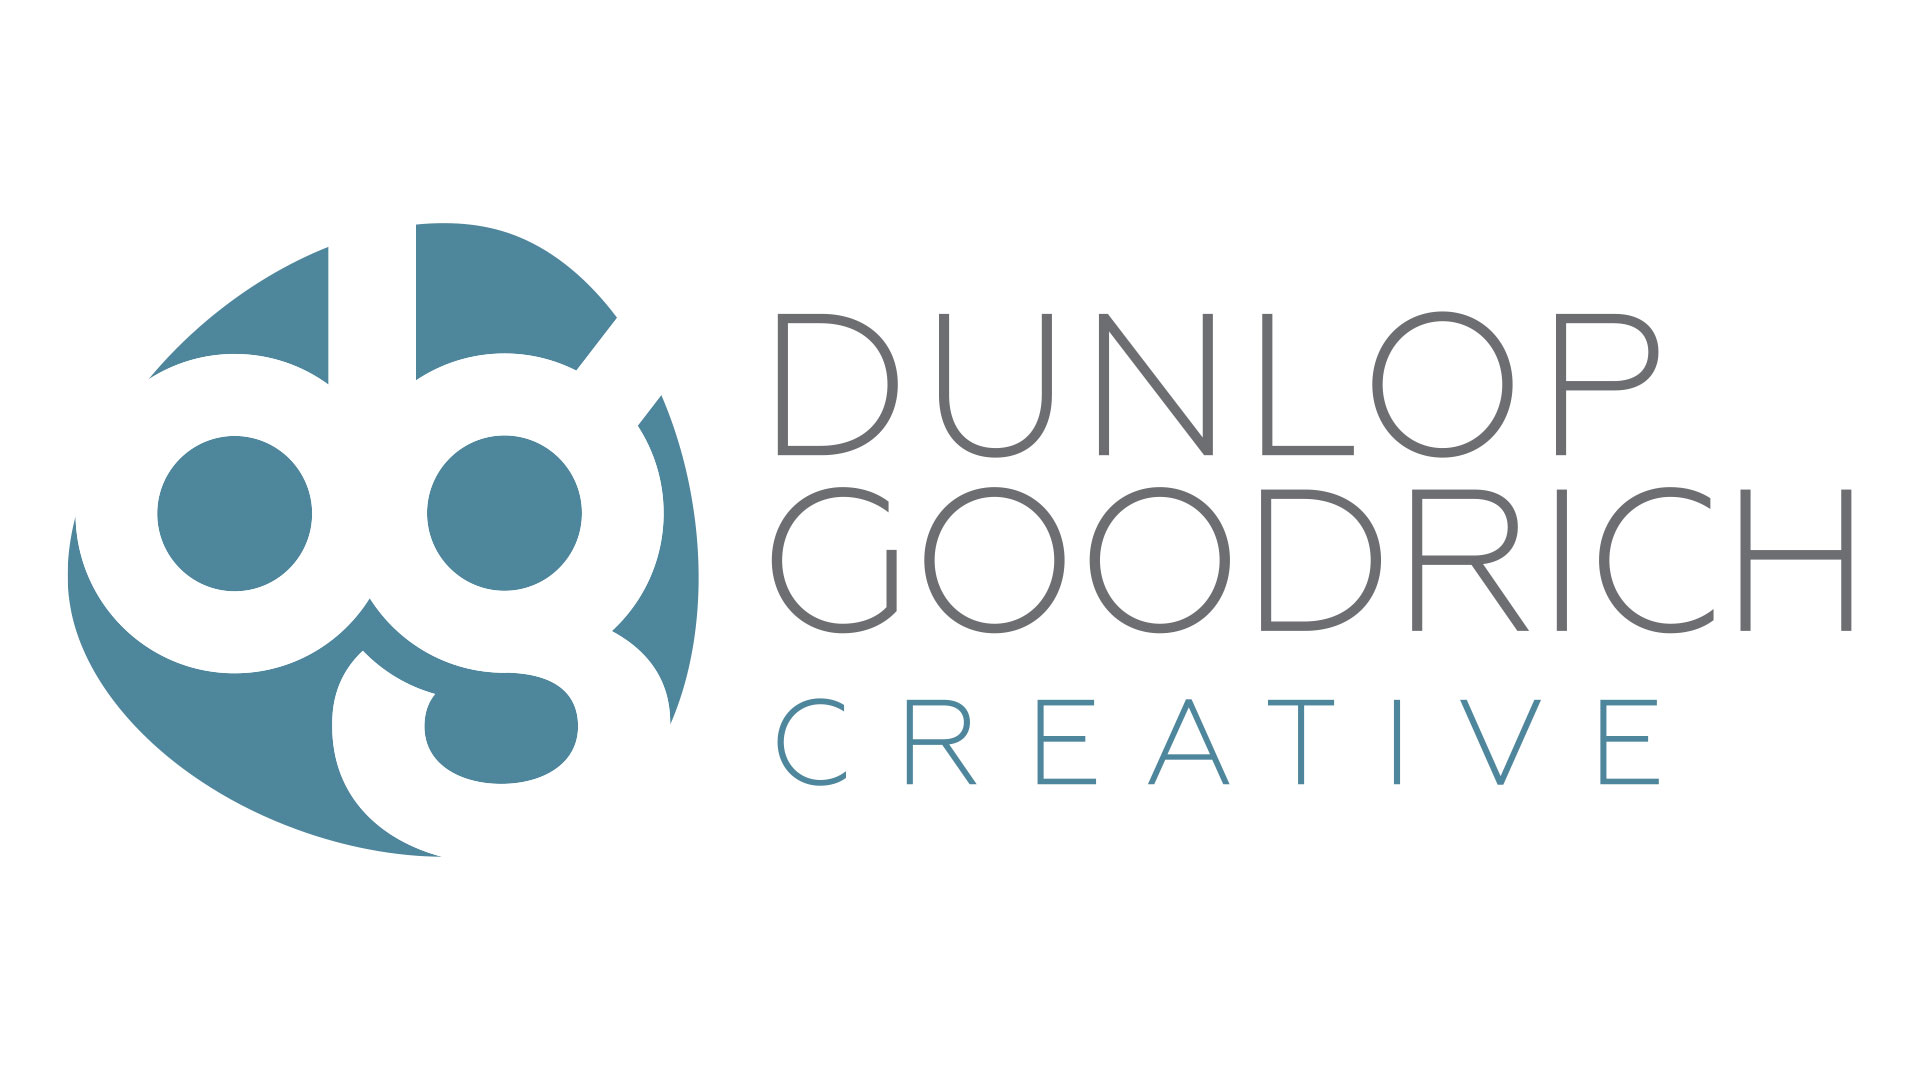 Dunlop Goodrich - Branding